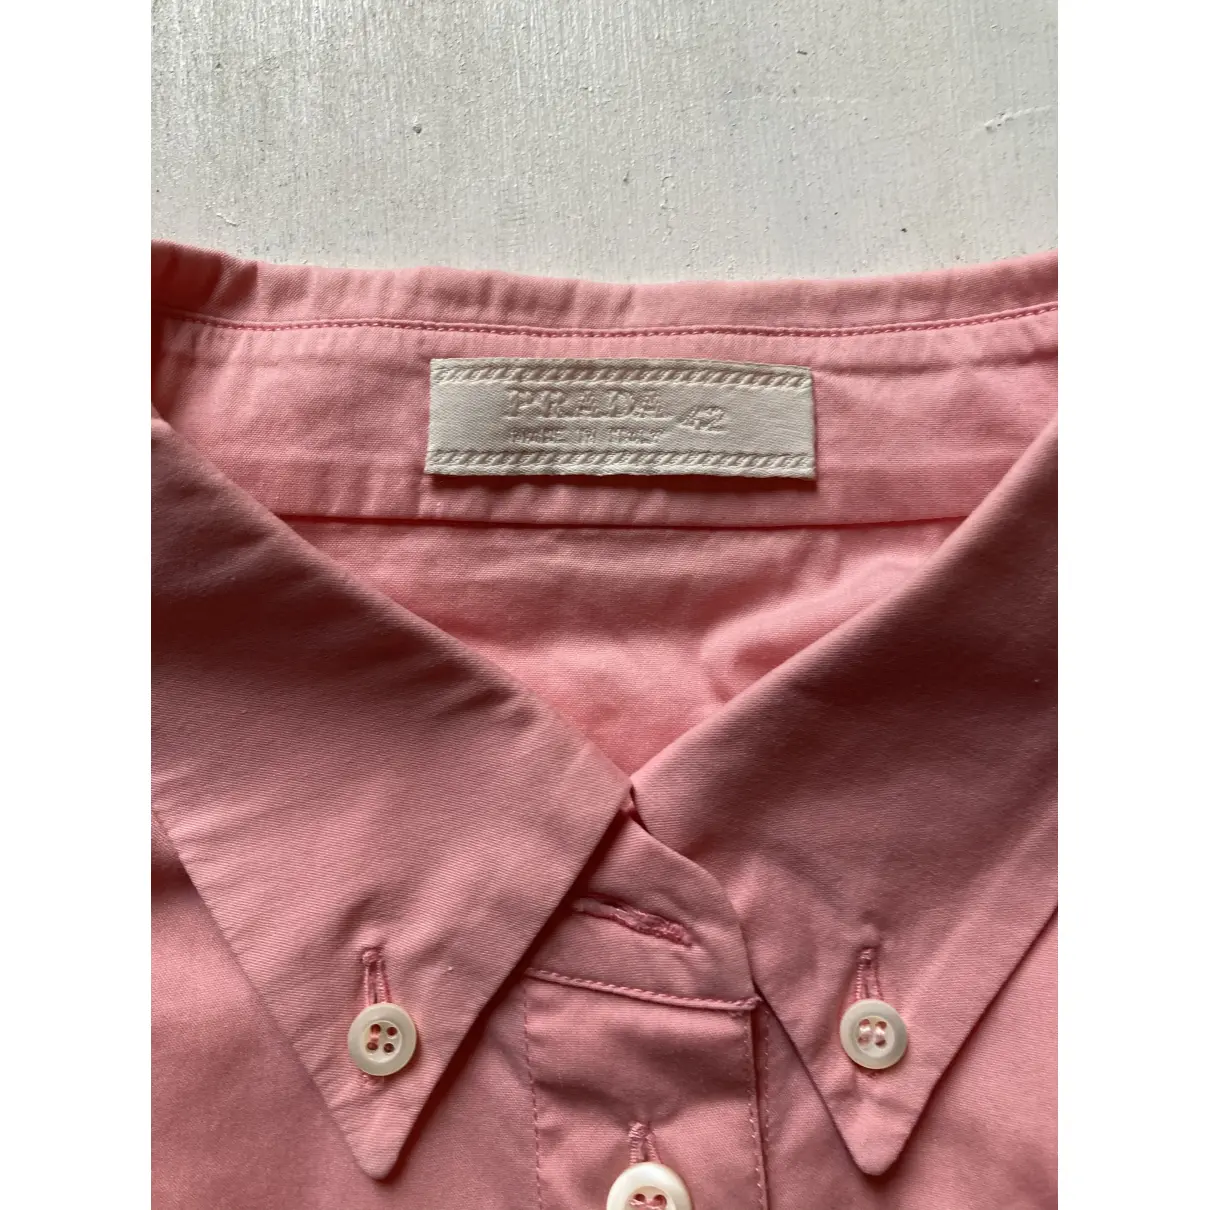 Buy Prada Pink Cotton Top online